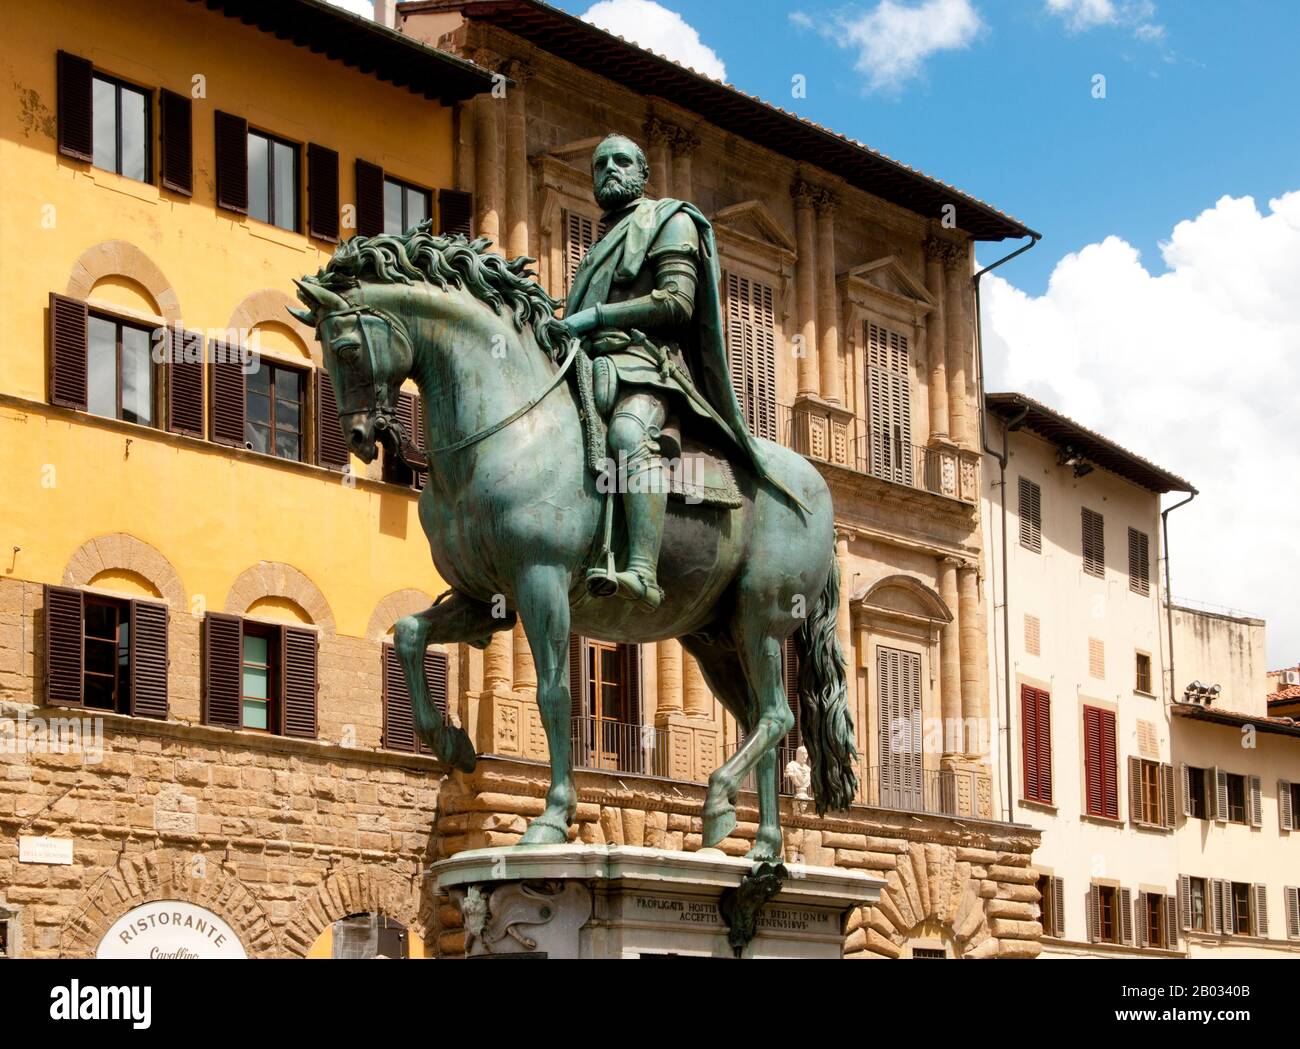 Cosimo di Giovanni de' Medici (genannt "der ältere" und posthum Vater der Nation; geboren am 10. April 1389 in Florenz, gestorben am 1. August 1464 in Careggi) war der erste der politischen Dynastie der Medici, de facto ein Herrschaftsträger von Florenz während eines Großabens der italienischen Renaissance. Stockfoto